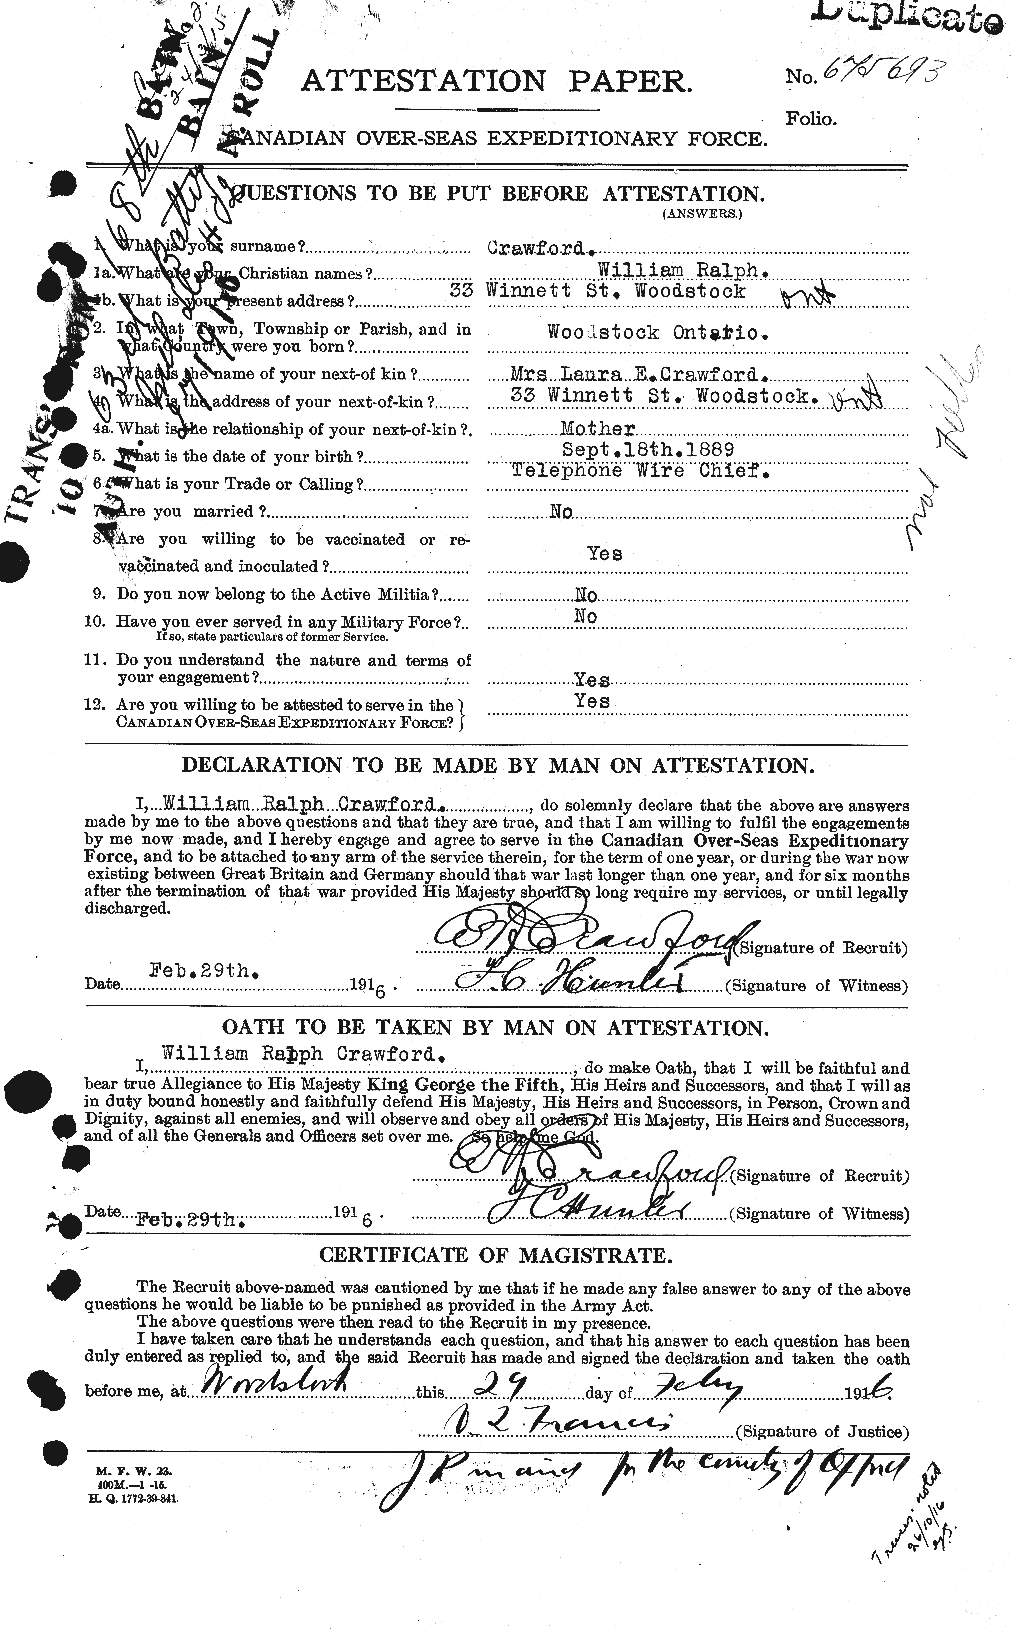 Dossiers du Personnel de la Première Guerre mondiale - CEC 060687a